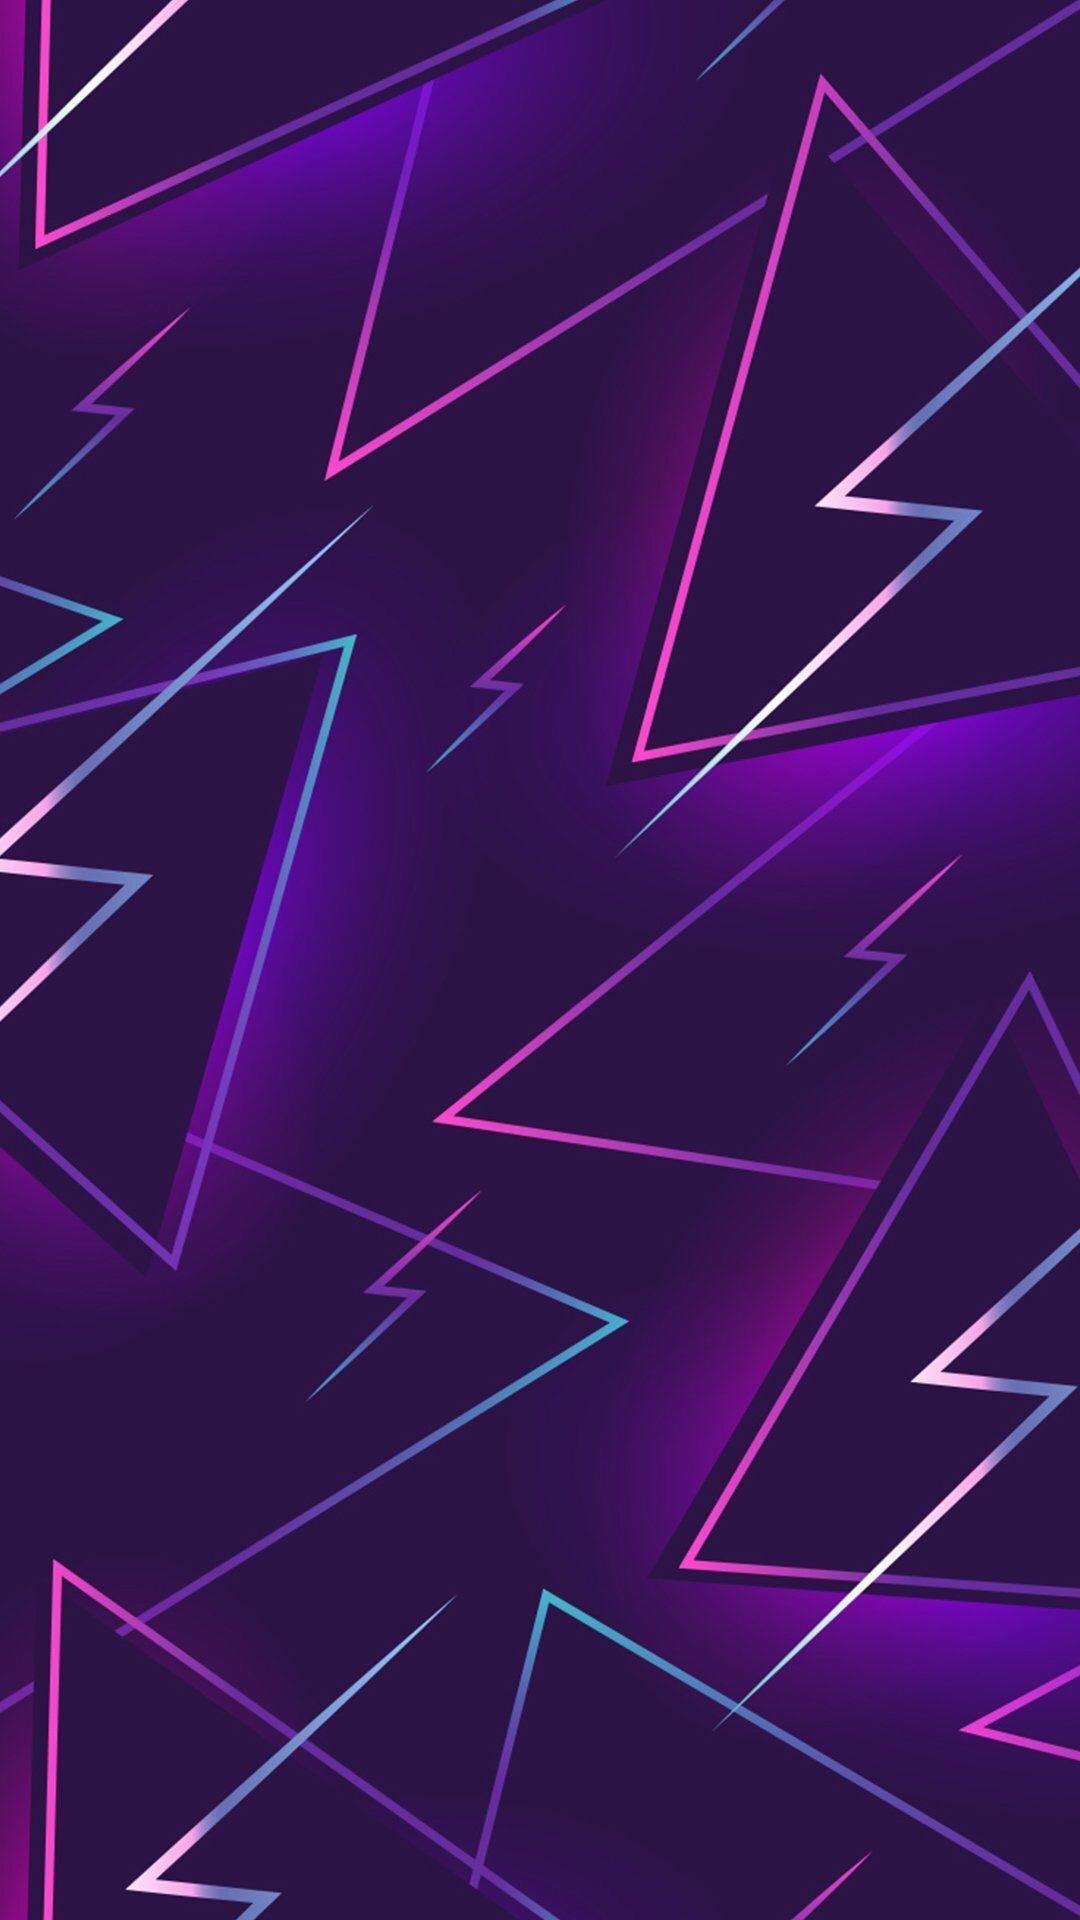 1080x1920 80s purple lightning